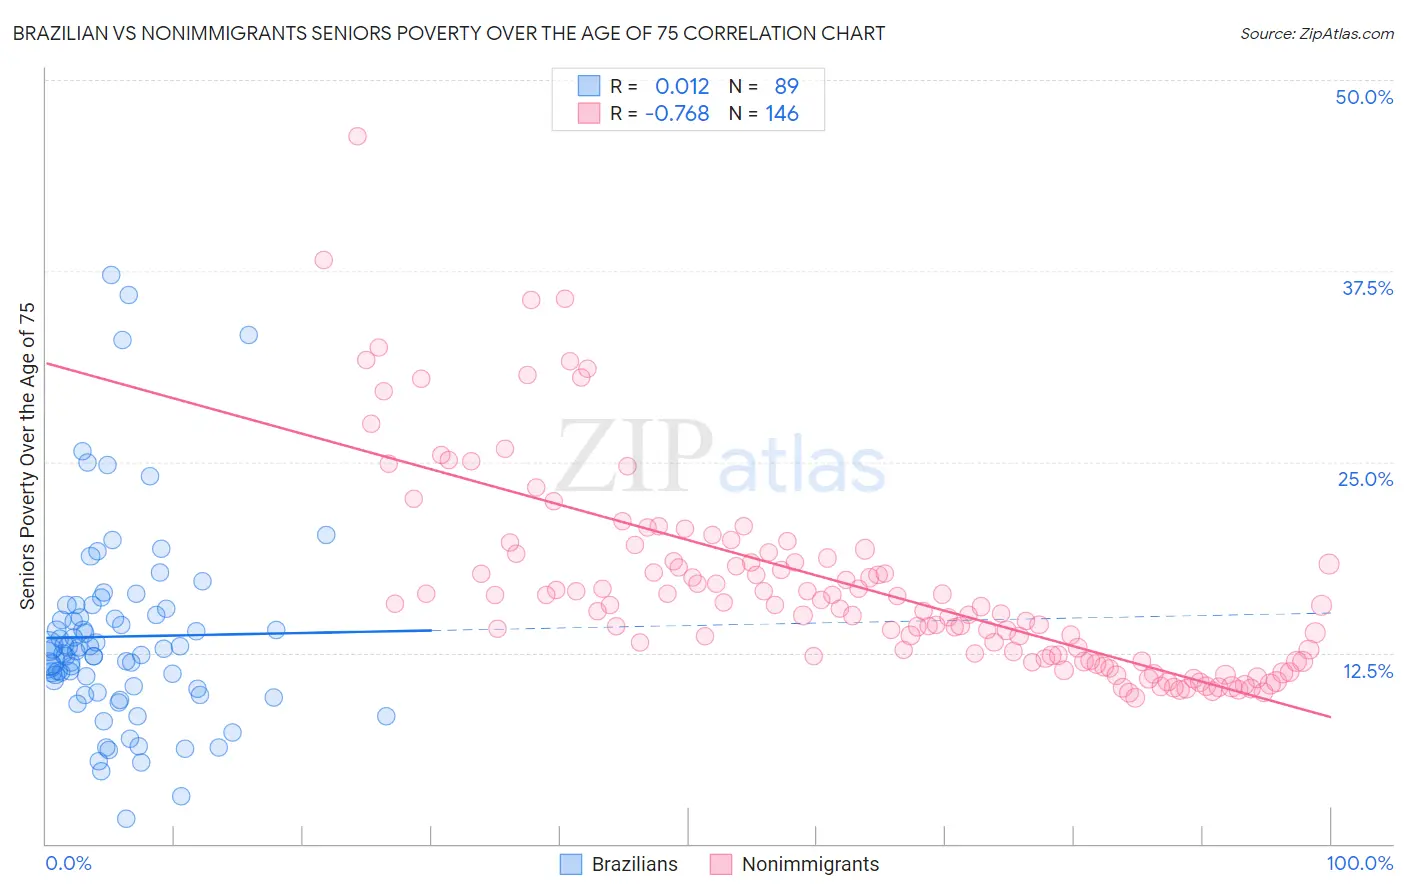 Brazilian vs Nonimmigrants Seniors Poverty Over the Age of 75